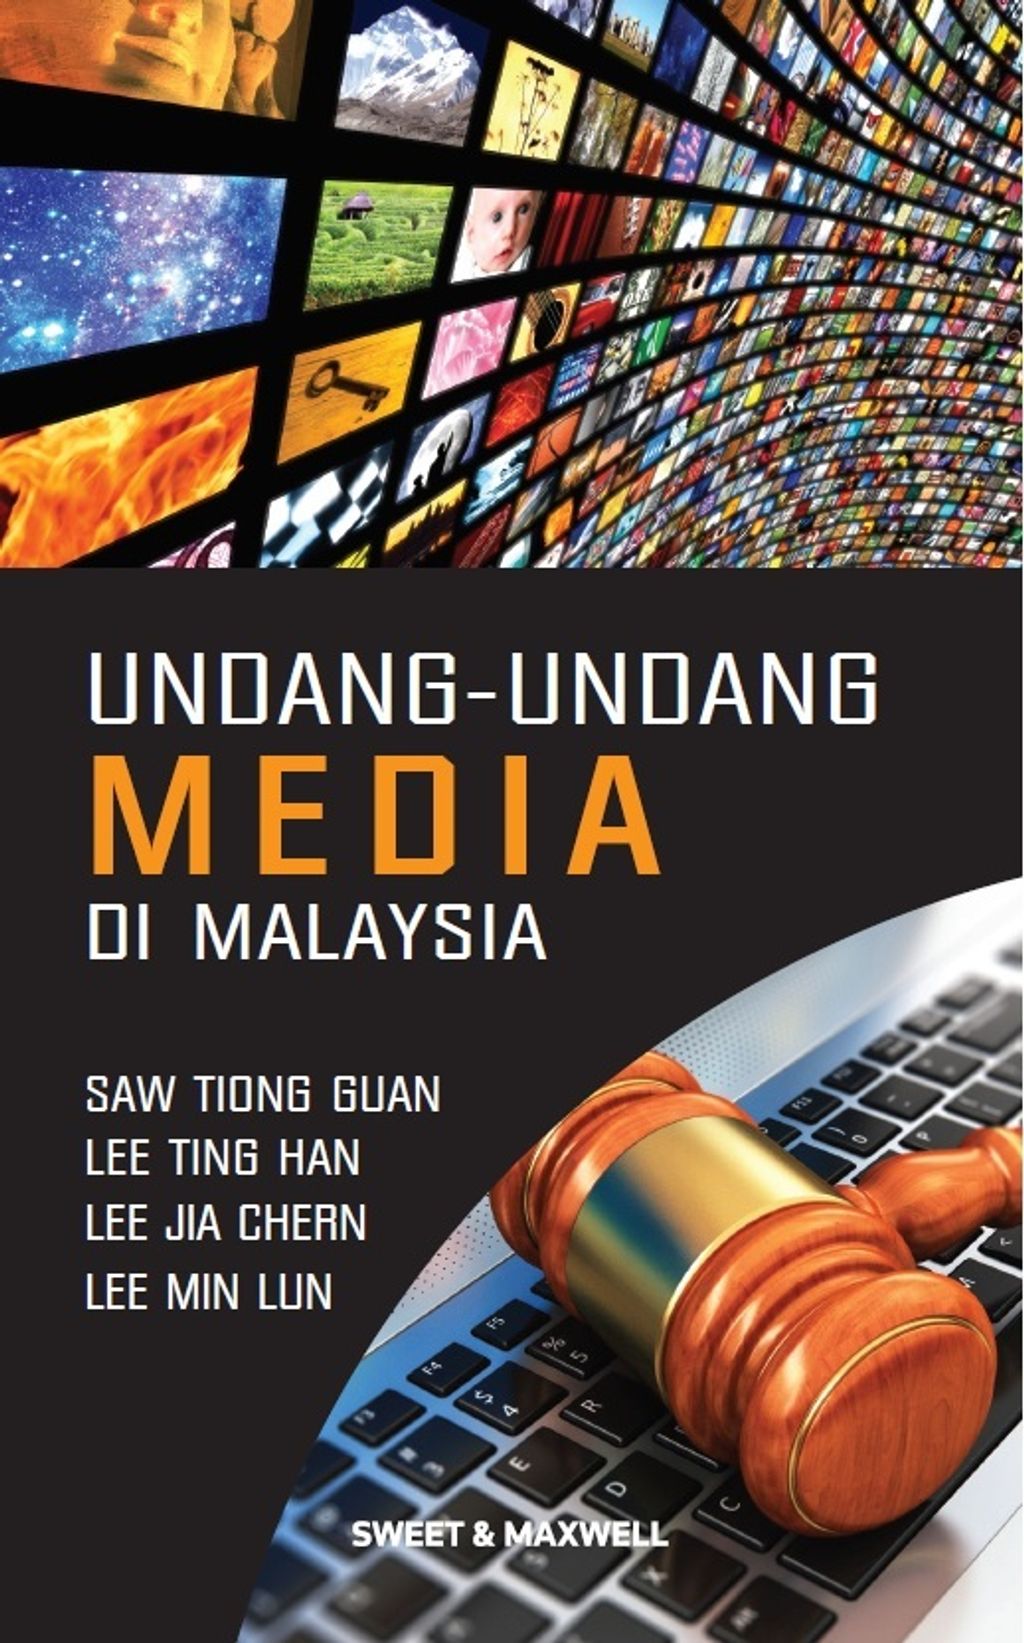 Undang_undang_media_di_Malaysia_SE.jpg